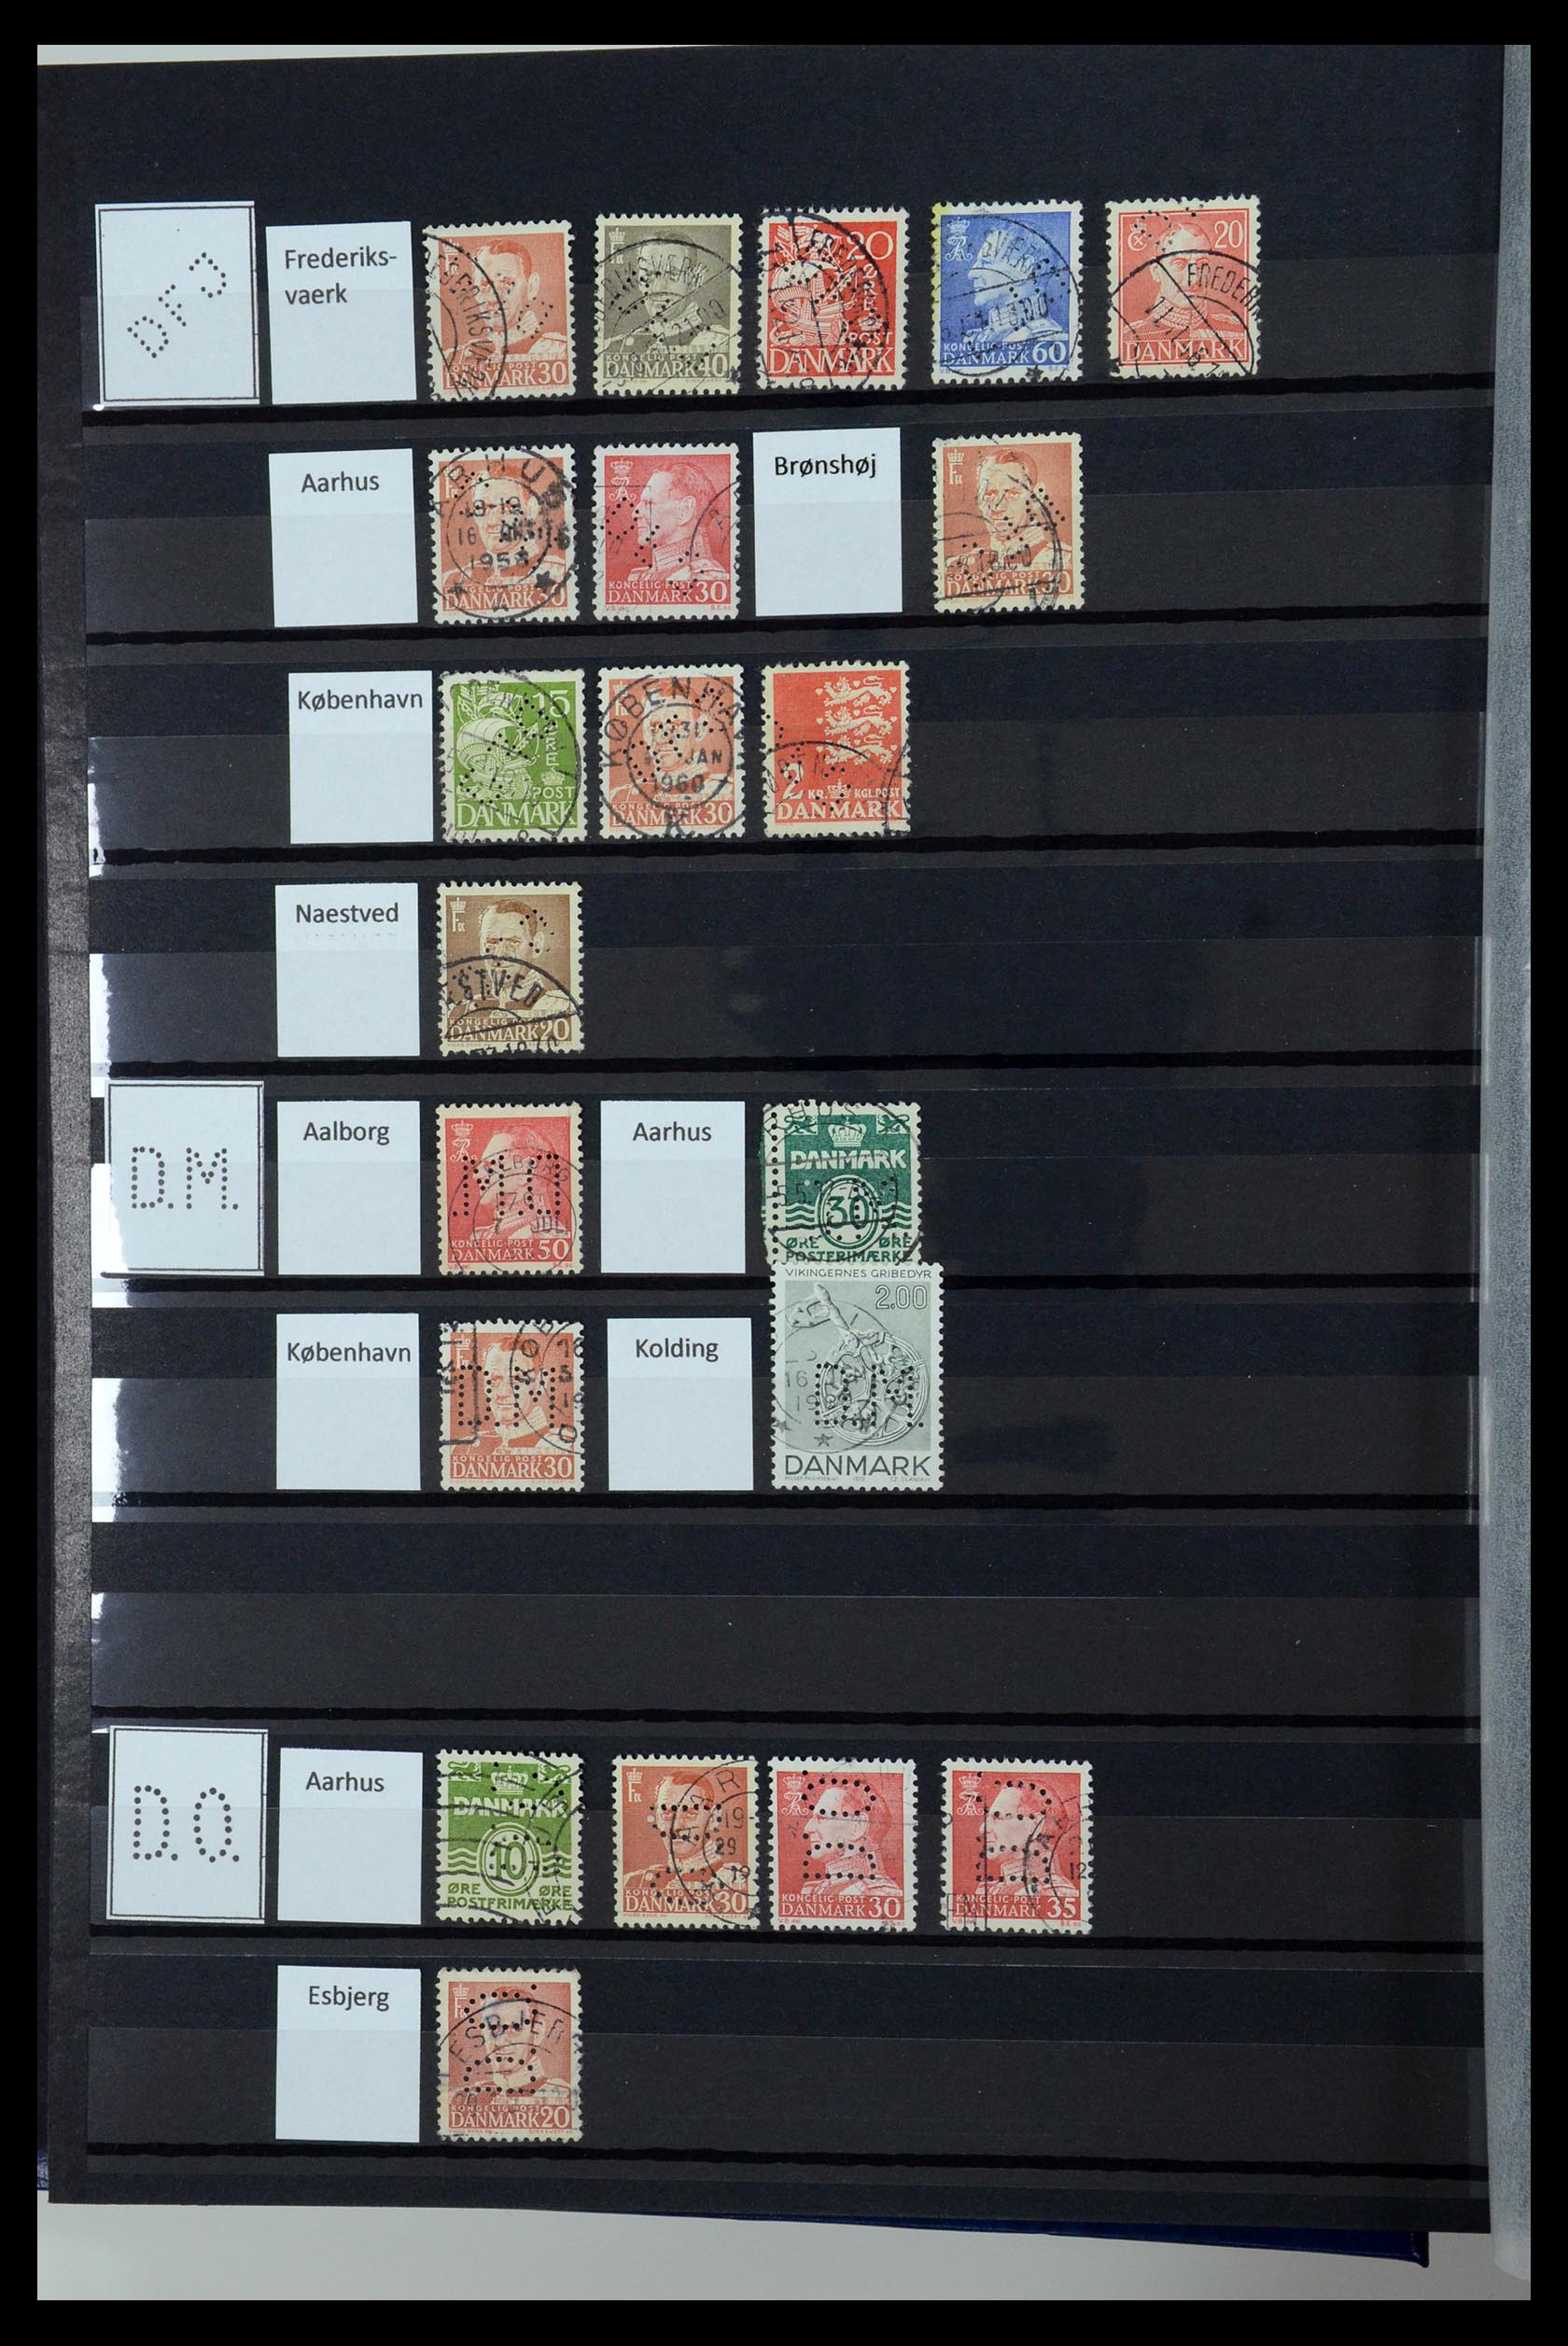 36396 063 - Postzegelverzameling 36396 Denemarken perfins.